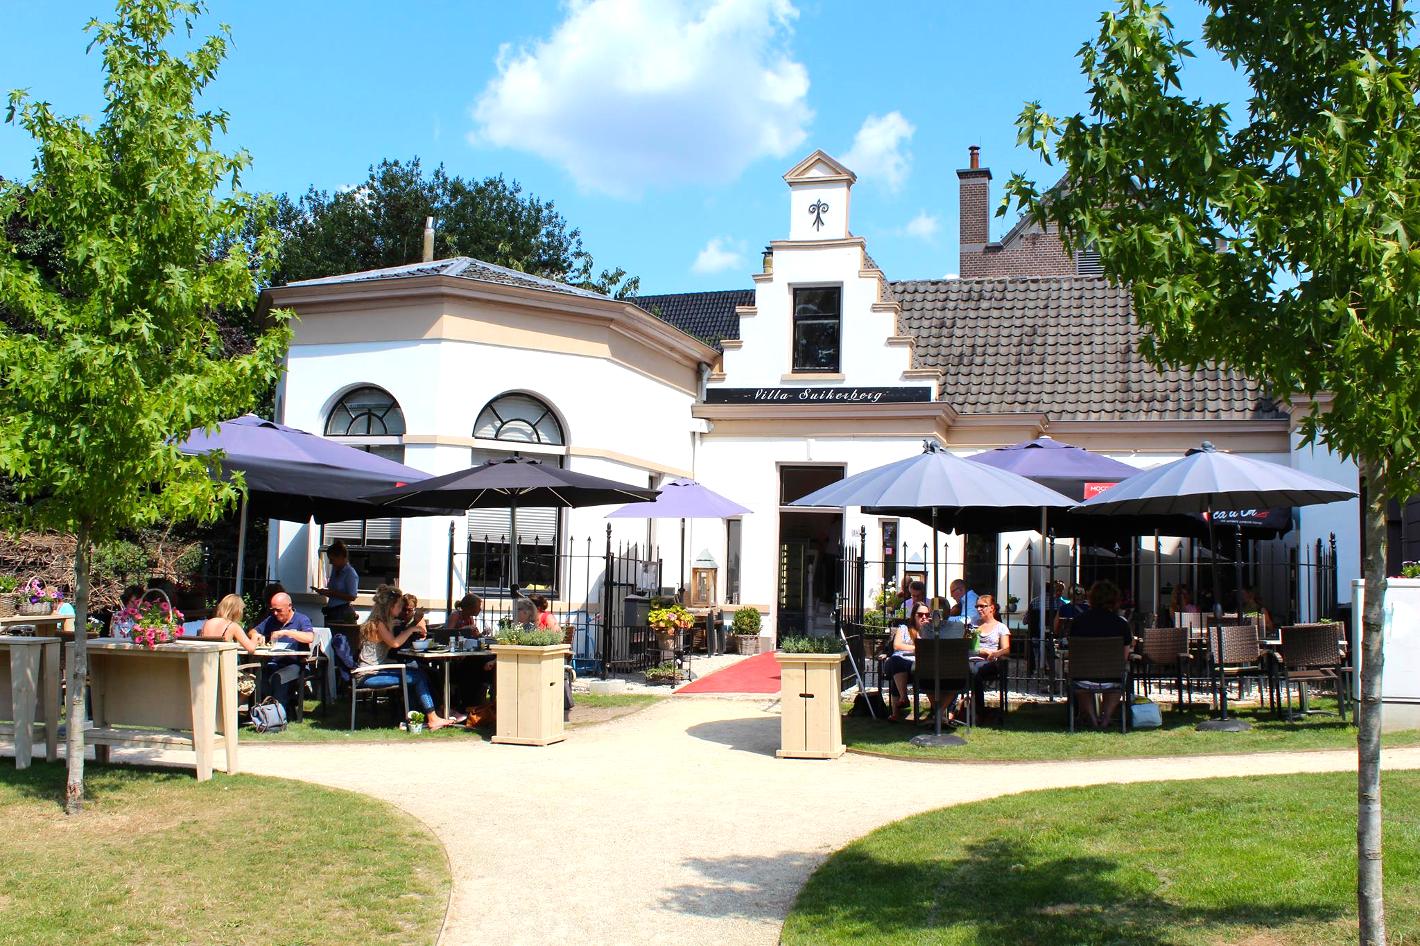 Foto Villa Suikerberg in Zwolle, Essen & Trinken, Genieße ein köstliches mittagessen, Ggenieße ein gutes getränk - #1